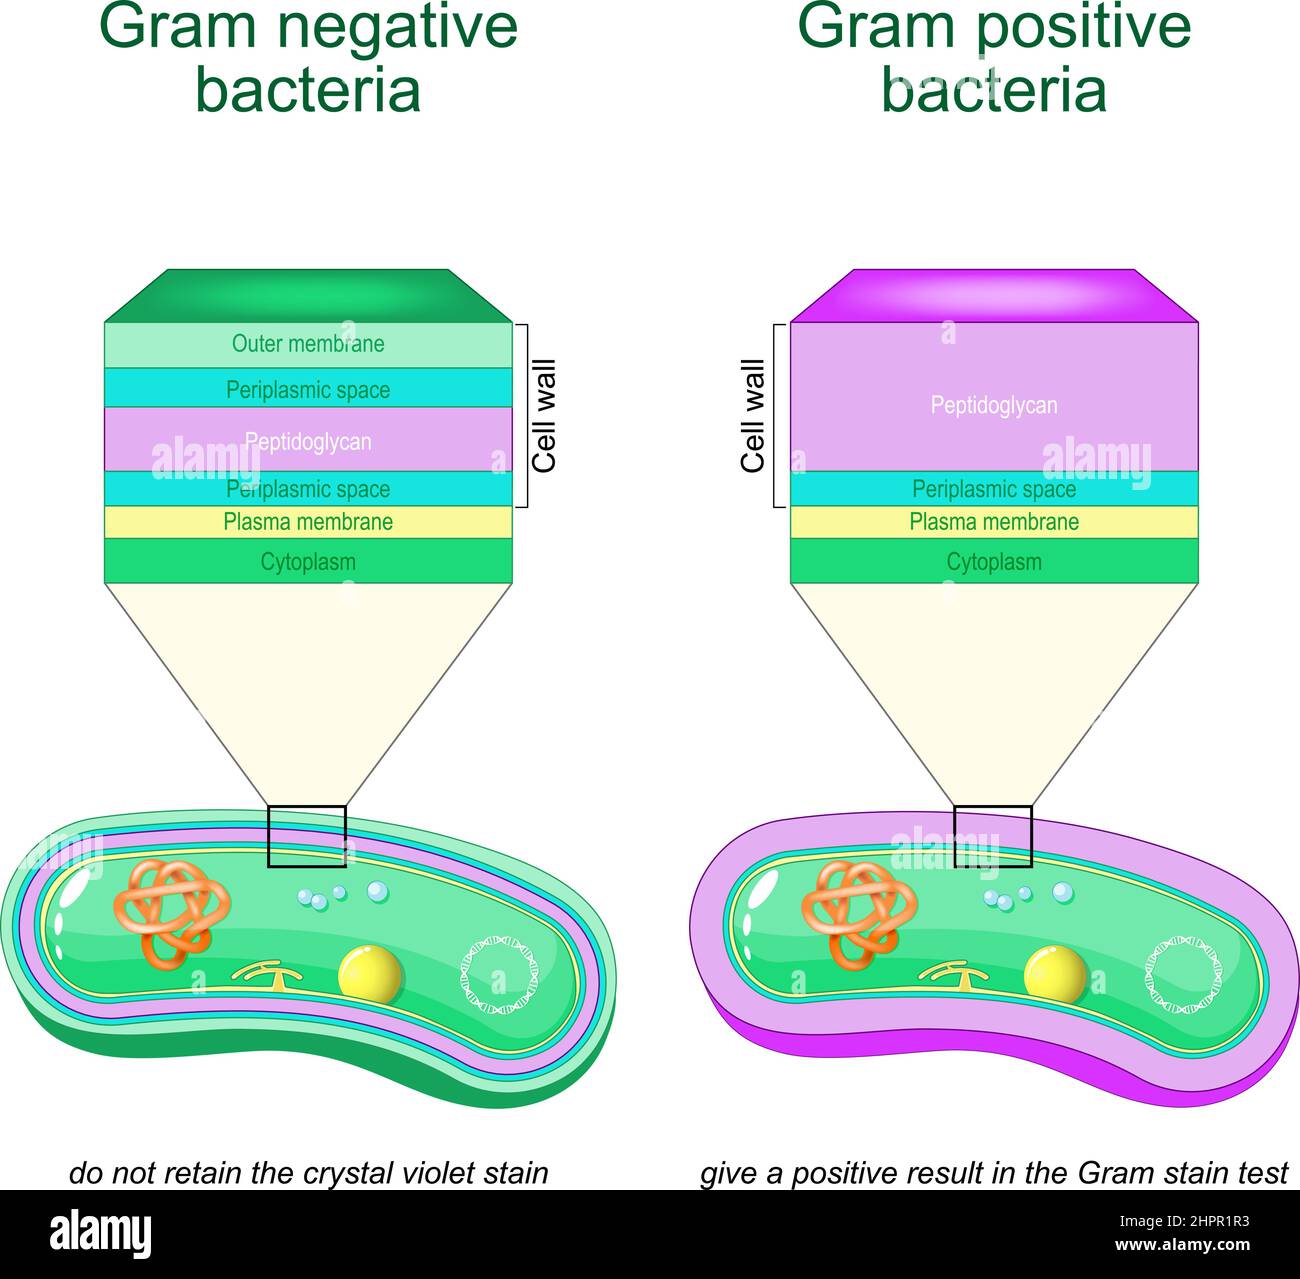 Les bactéries Gram négatives ne retiennent pas la coloration violet de cristal. Les bactéries Gram positives donnent un résultat positif au test de coloration de Gram. Comparaison Illustration de Vecteur